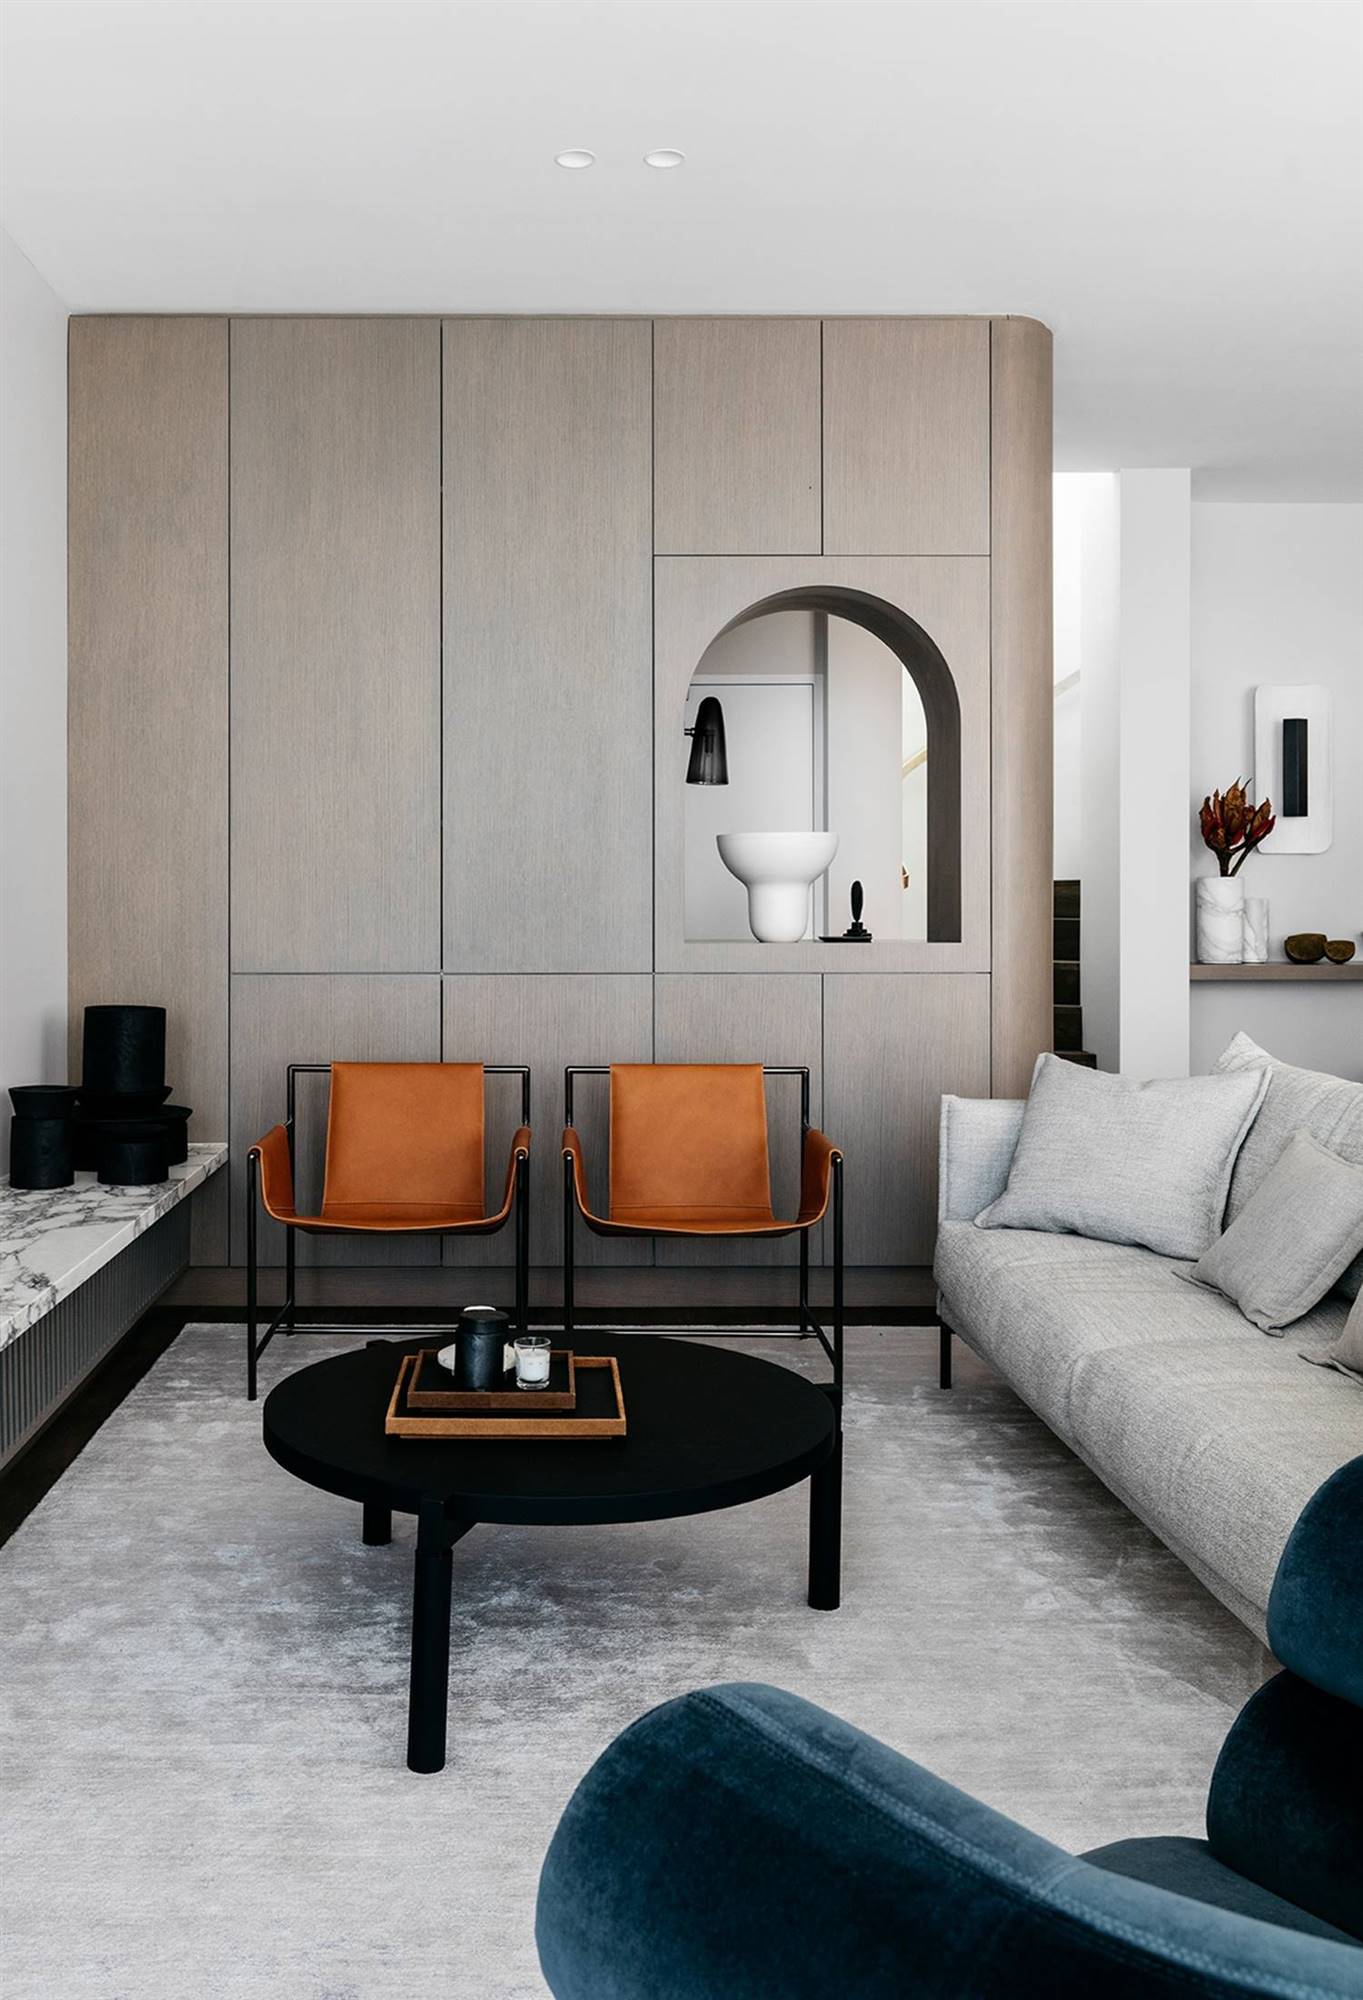 Interior combinado en diferentes tonalidades neutras y mobiliario de contrastes diseñado por Felix Forest